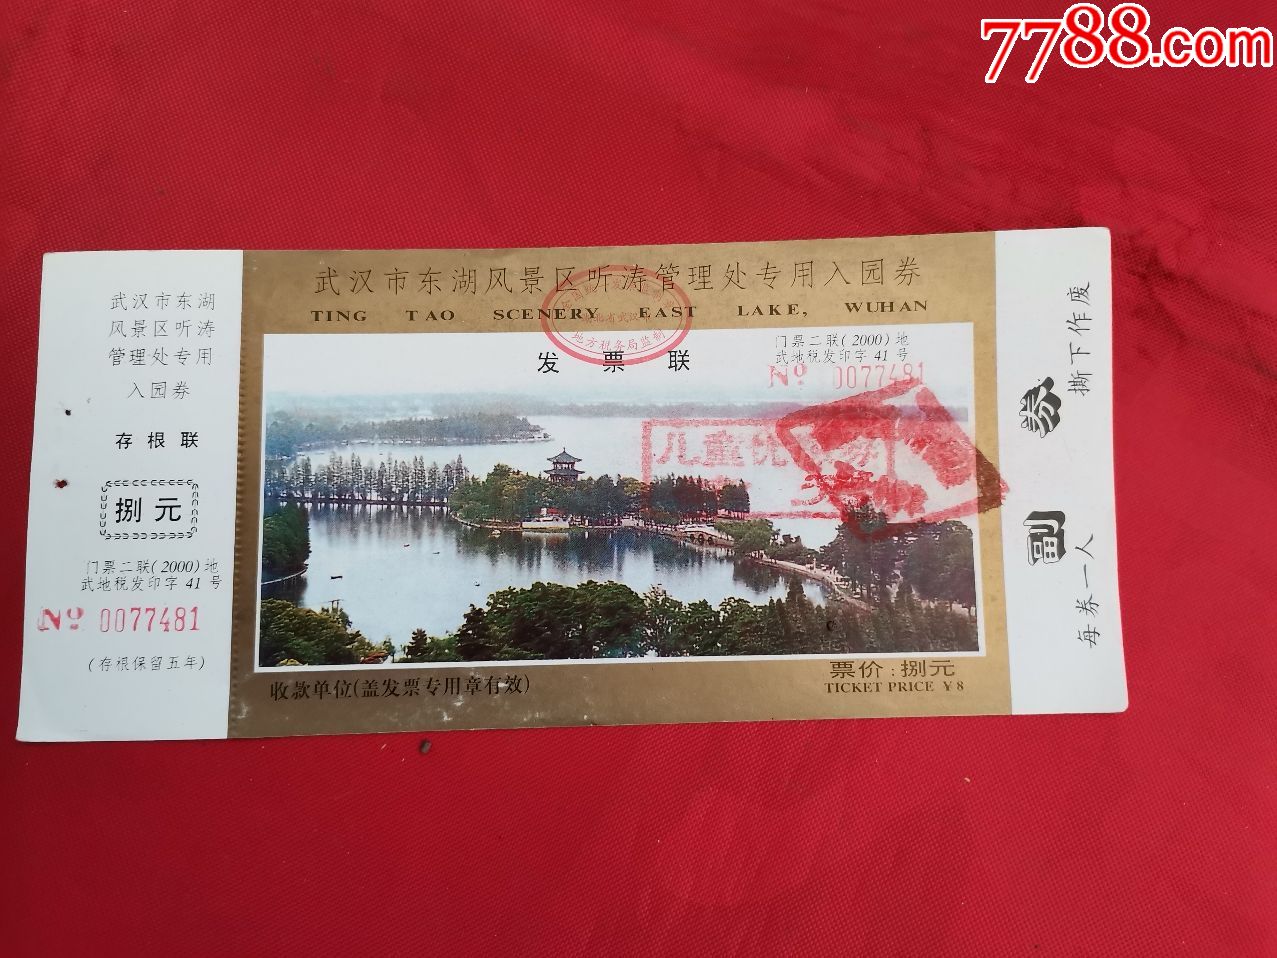 老门票:武汉市东湖风景区听涛管理处专用入园券